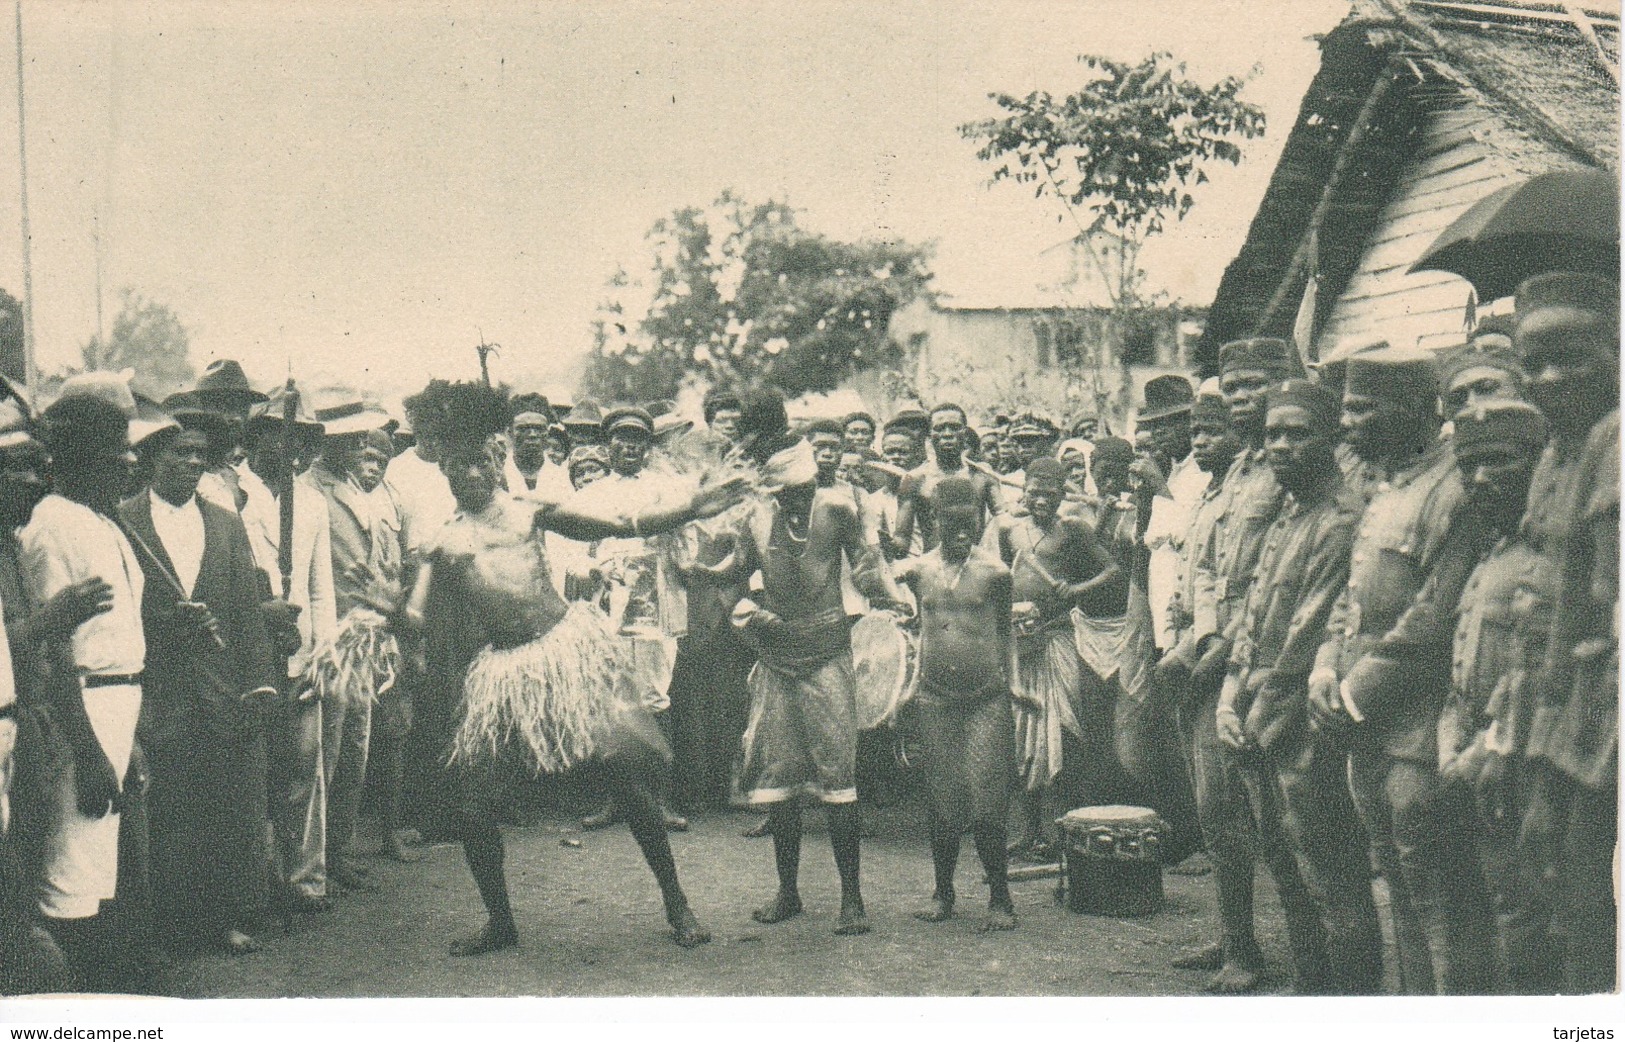 POSTAL DE GUINEA ESPAÑOLA DE ESAMBIRAS EN SU BAILE TIPICO (PUBLICACIONES PATRIOTICAS) EXPO IBERO-AMERICANA SEVILLA 1929 - Guinea Equatoriale